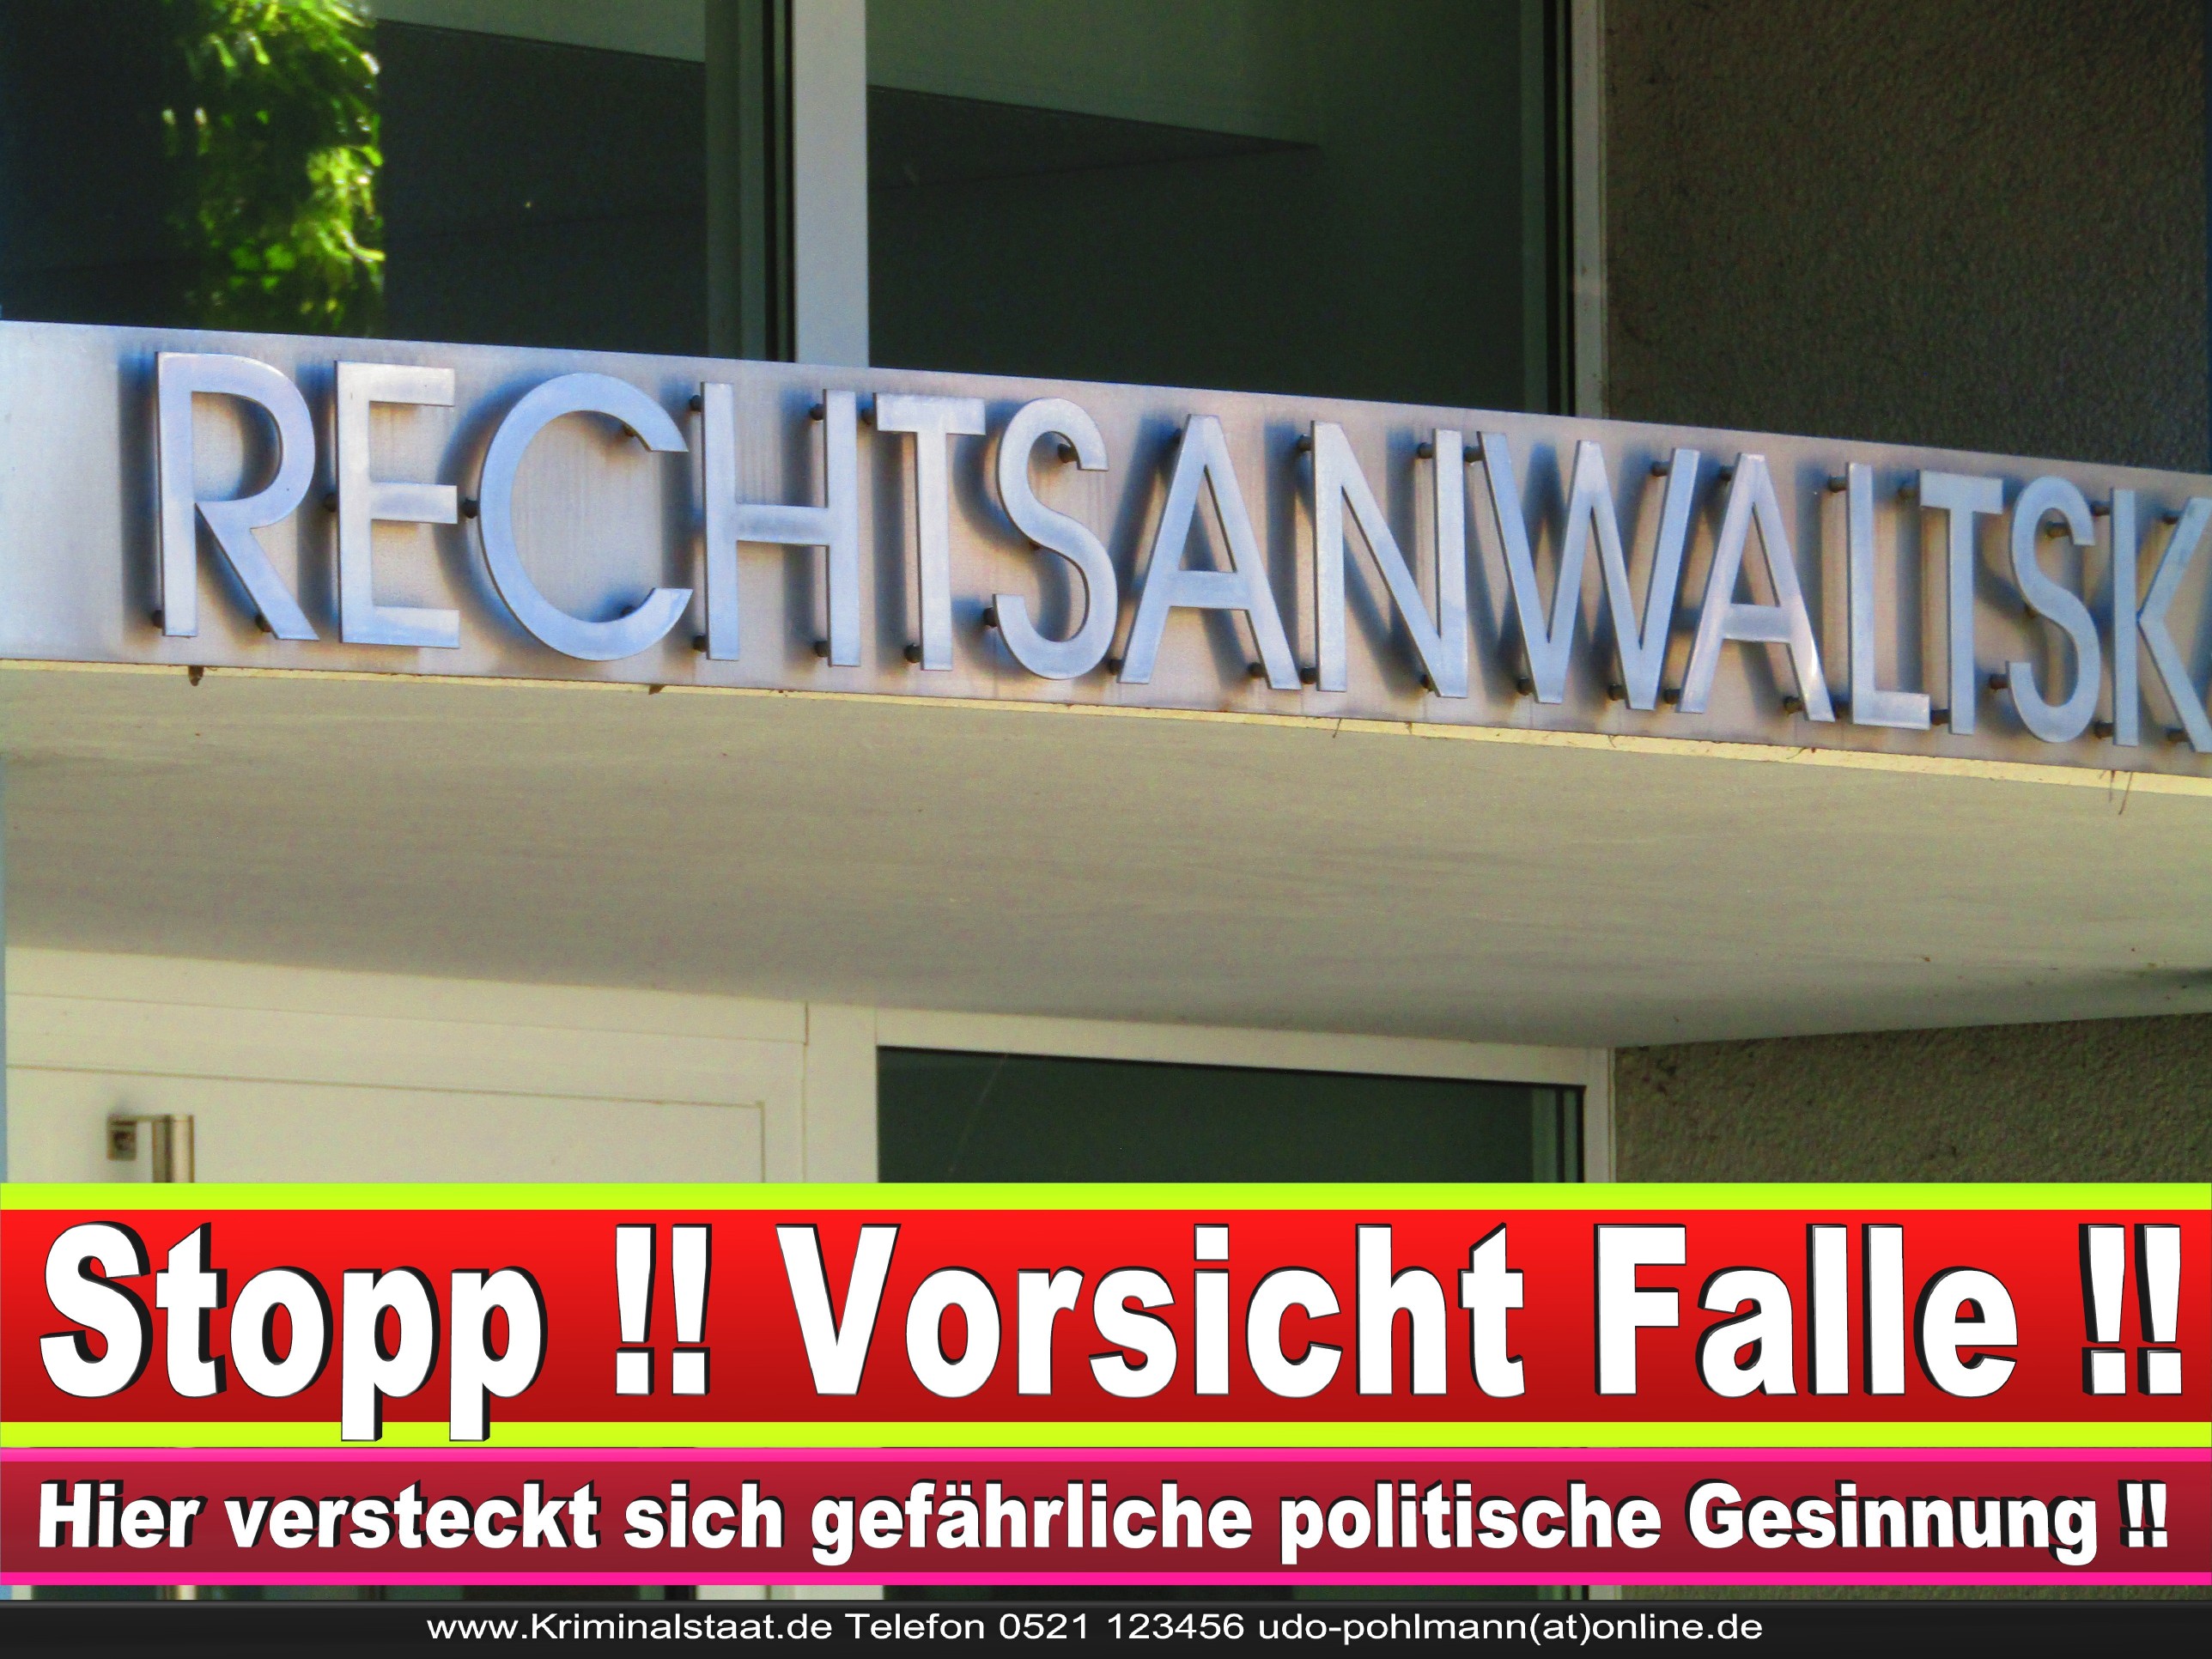 Rechtsanwaltskammer Hamm NRW Justizminister Rechtsanwalt Notar Vermögensverfall Urteil Rechtsprechung CDU SPD FDP Berufsordnung Rechtsanwälte Rechtsprechung (15)